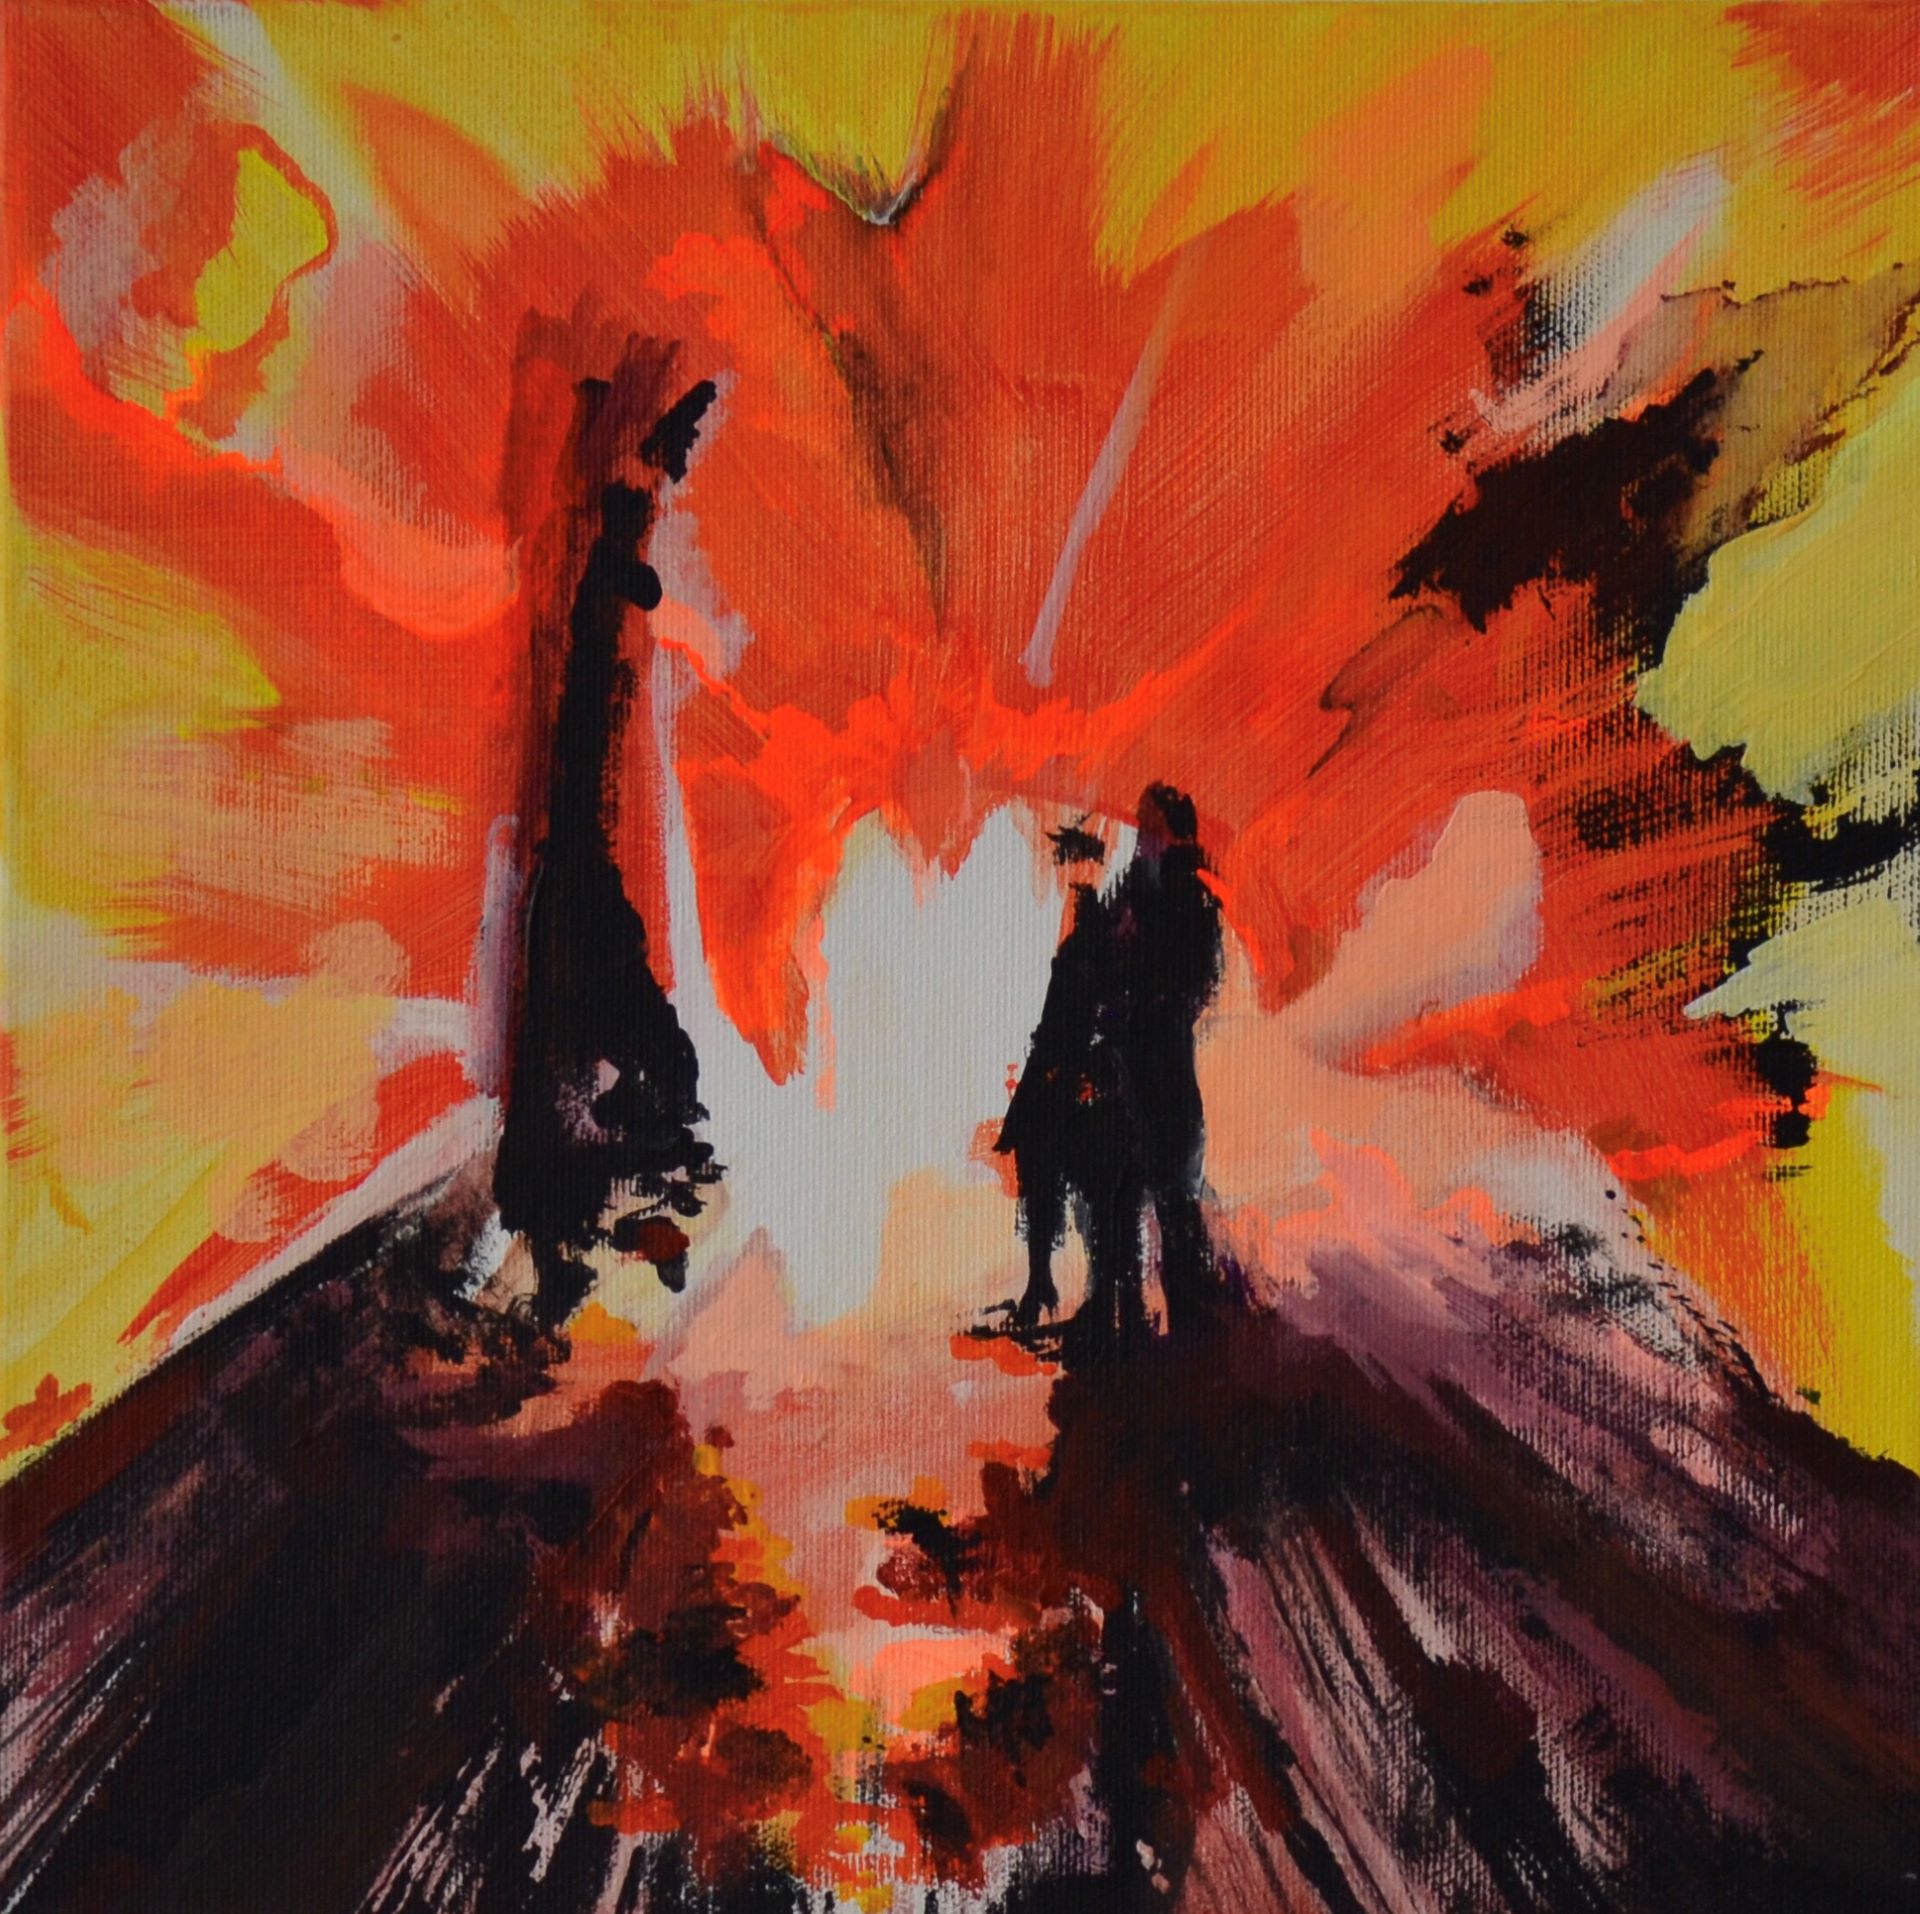 Obraz o bardzo dynamicznych i zróżnicowanych formach i kontrastowych kolorach. Jest swoistym nawiązaniem do erupcji wybuchu.